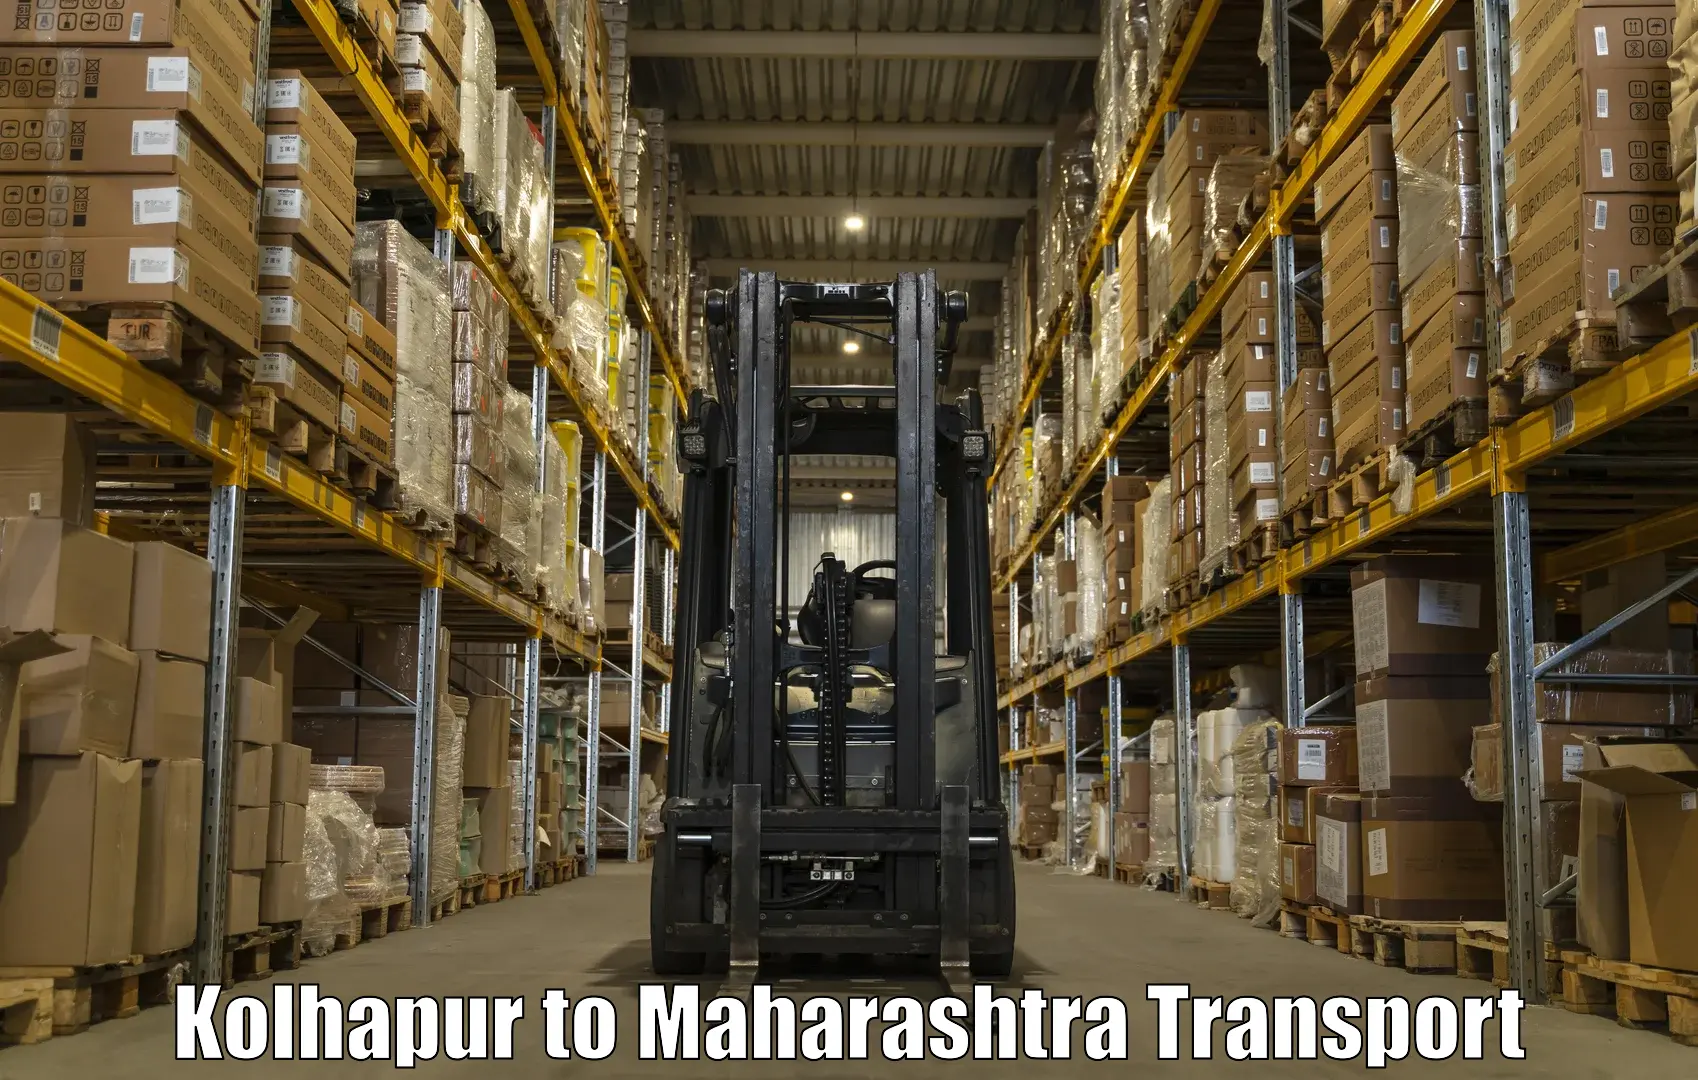 Furniture transport service Kolhapur to Rashiwade